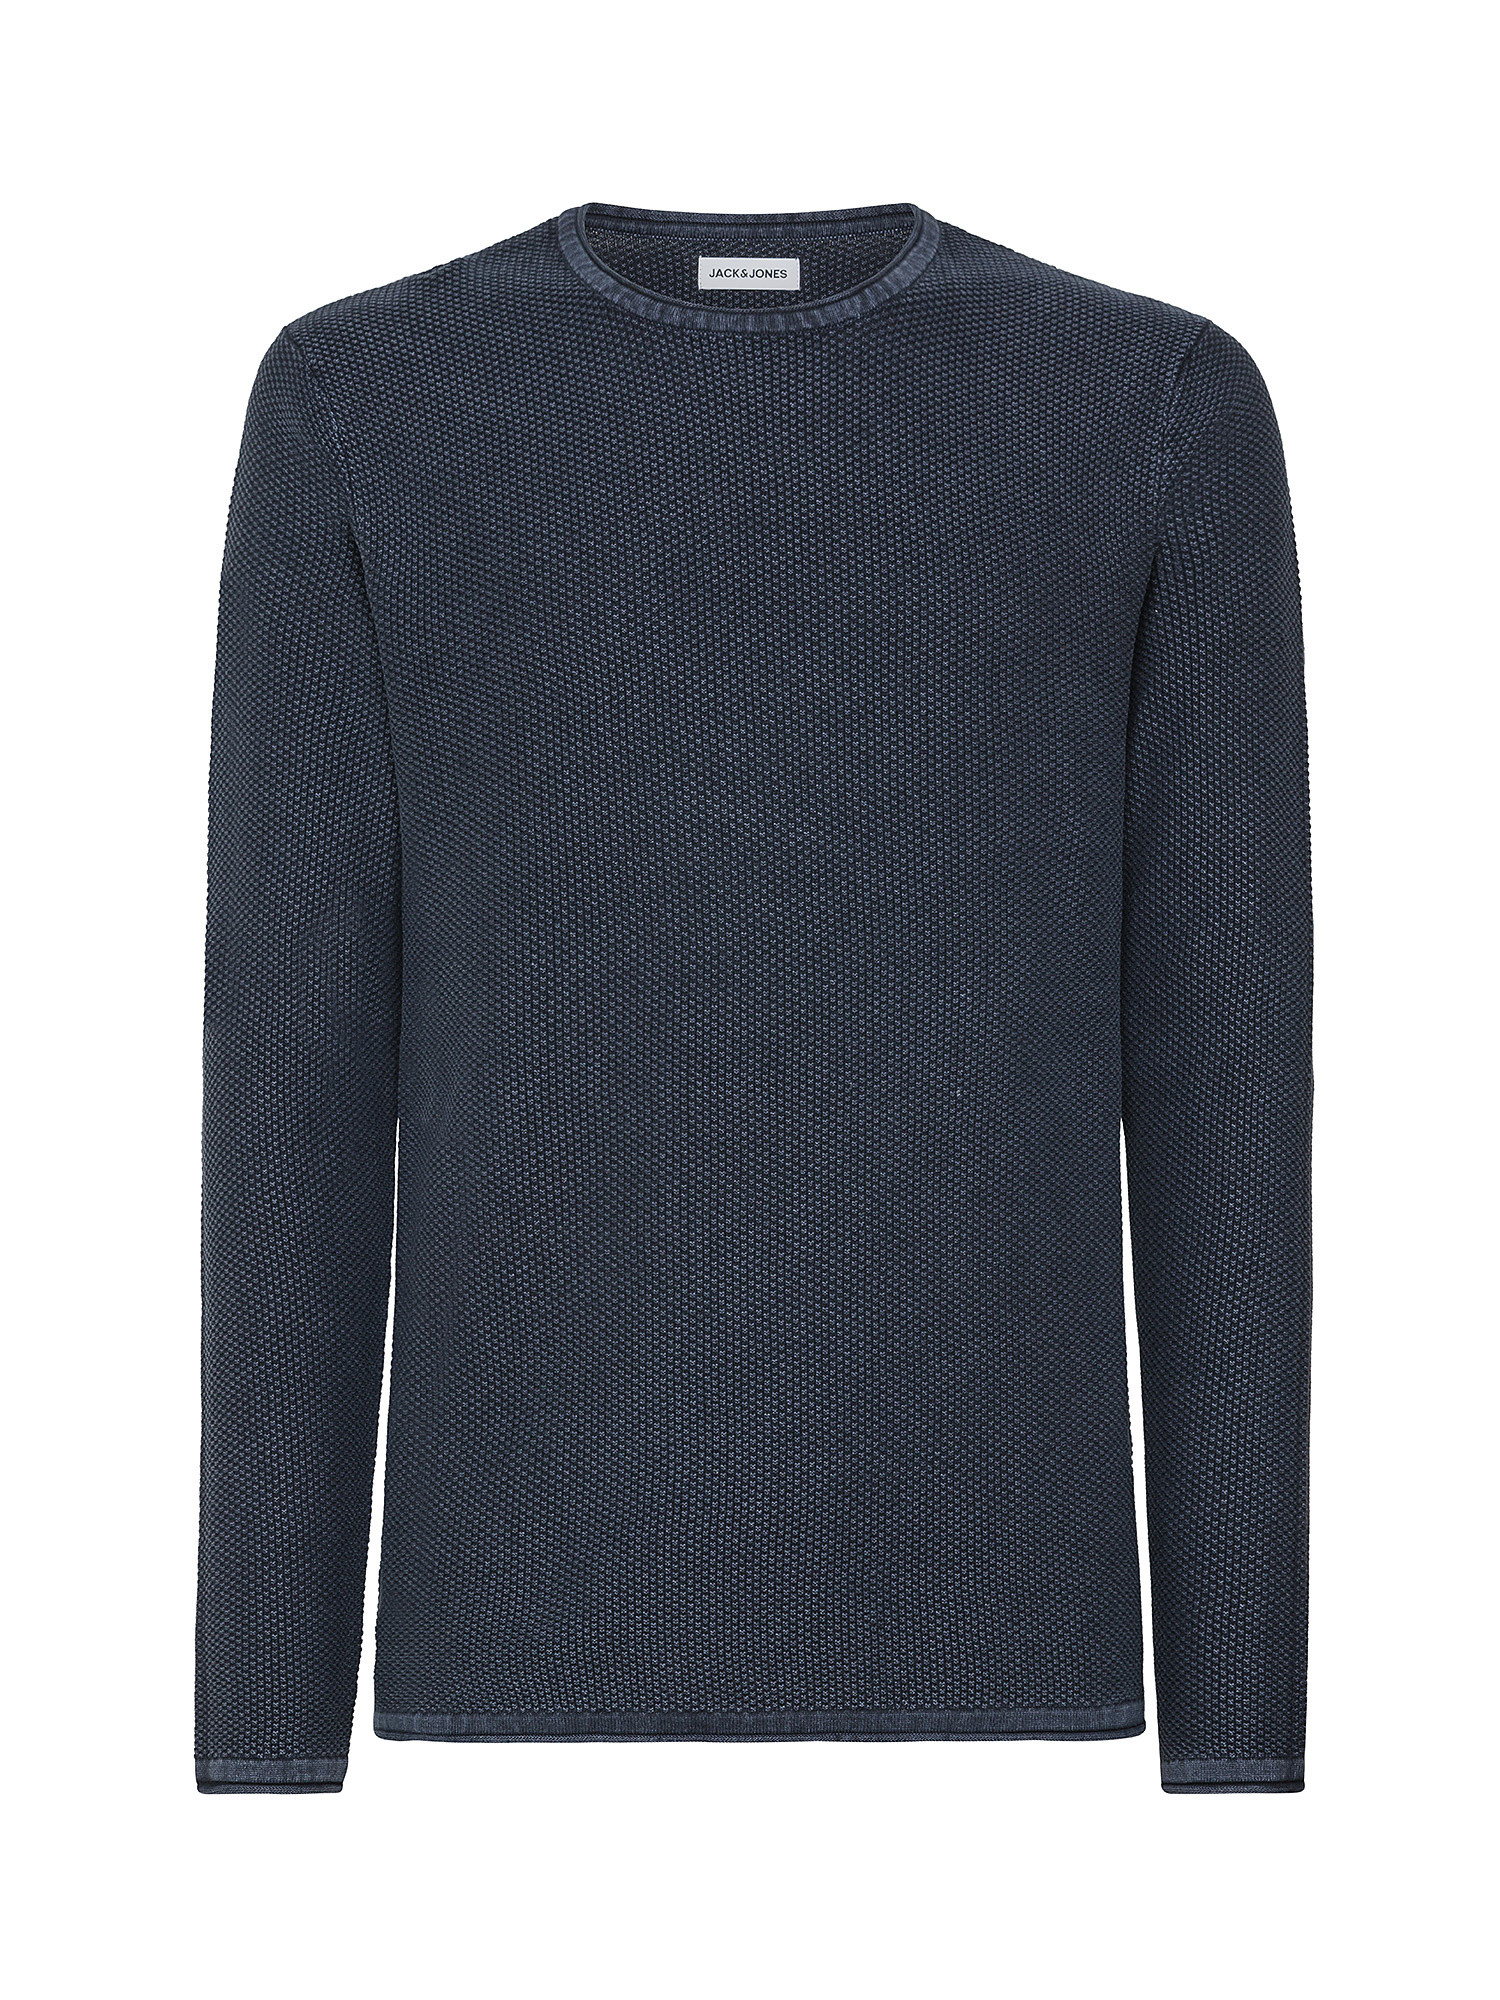 Jack & Jones - Cotton pullover, Dark Blue, large image number 0